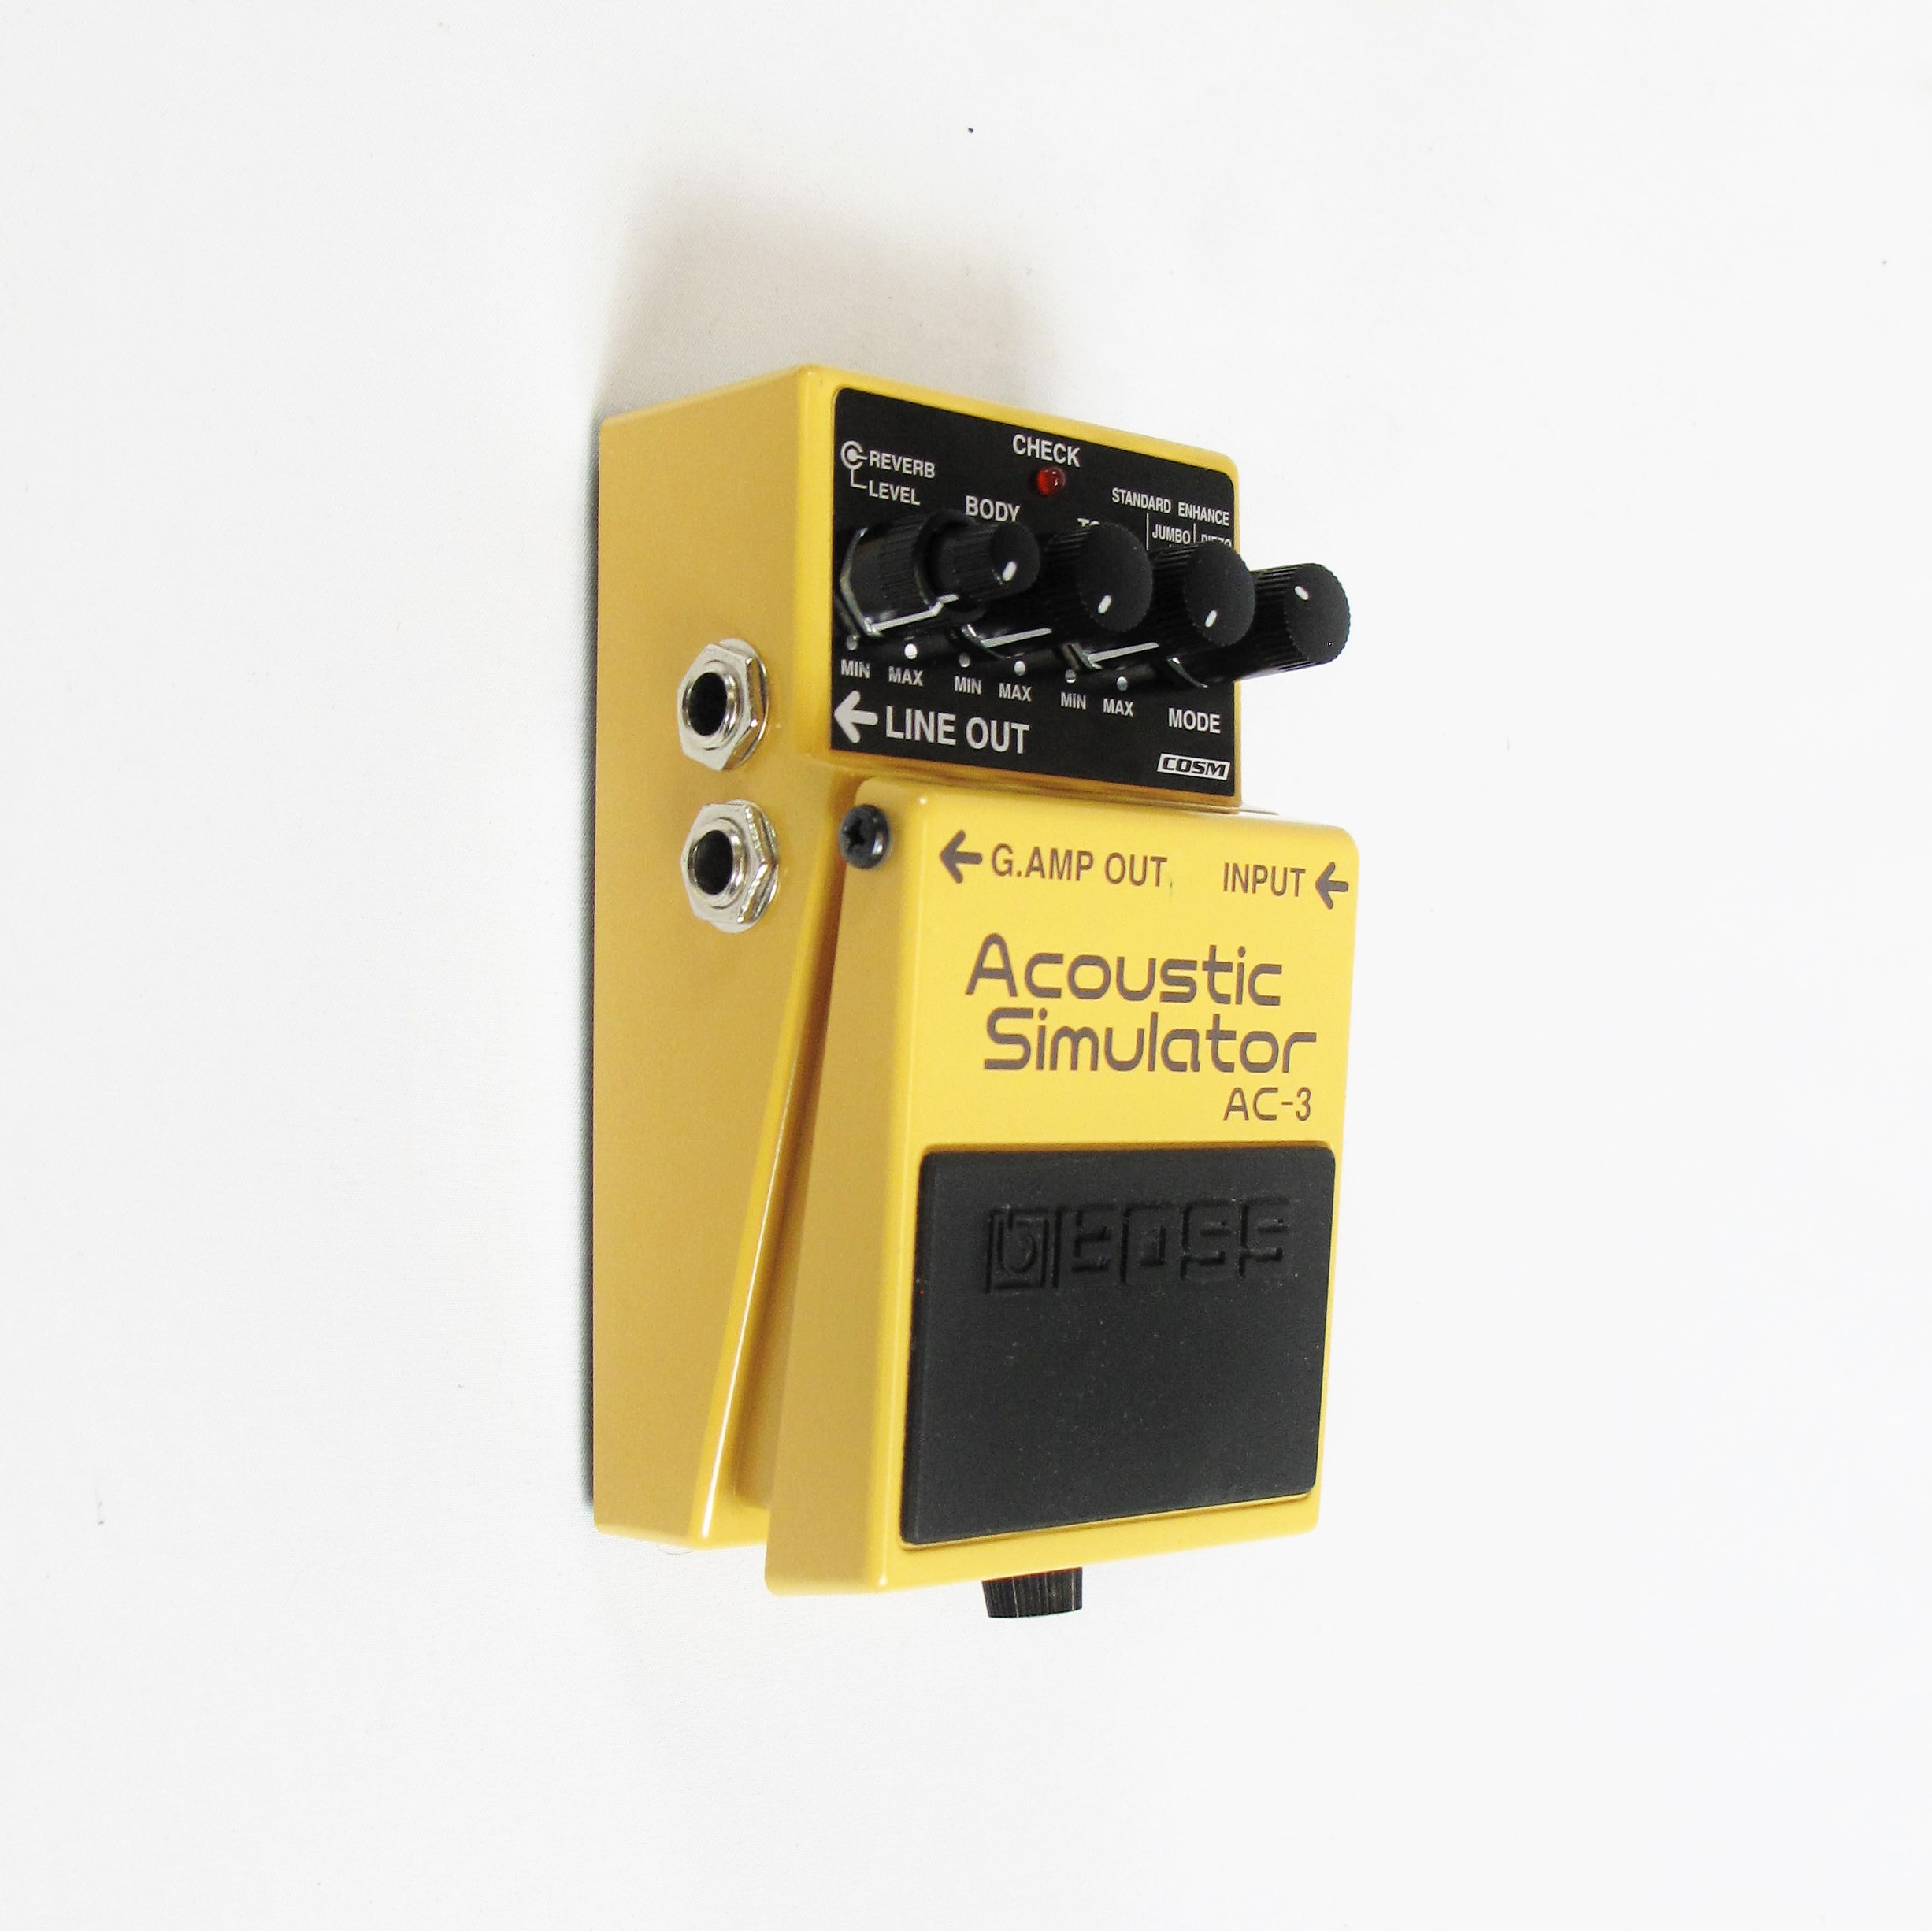 Acoustic simulator AC-3